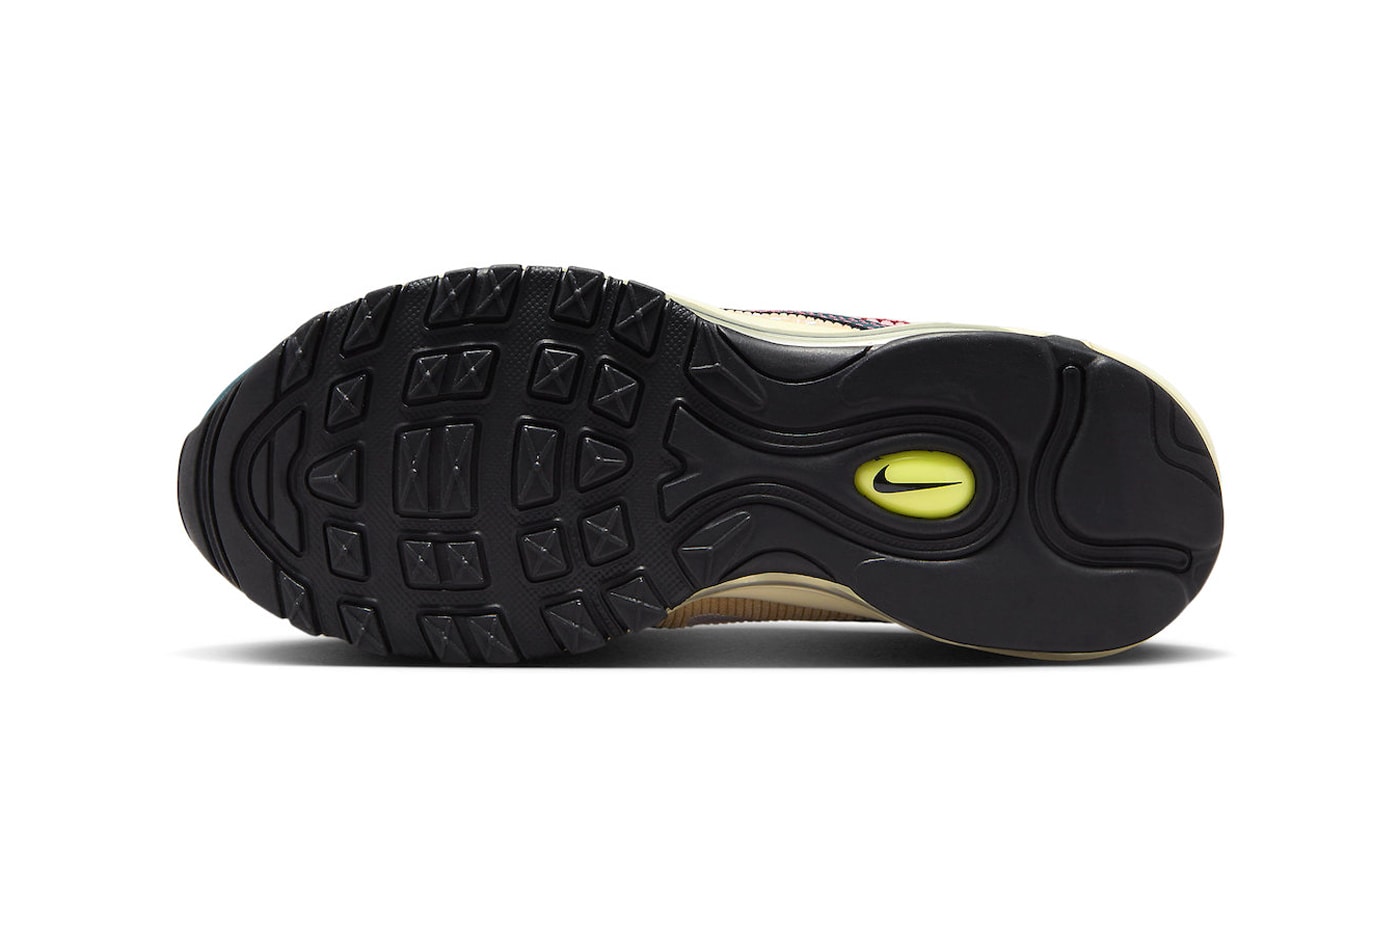 ナイキエアマックス  97 にマルチカラーのコーデュロイを採用した新作が登場 Nike Air Max 97 Arrives in Multi-Color "Corduroy" FB8454-300 swoosh release info